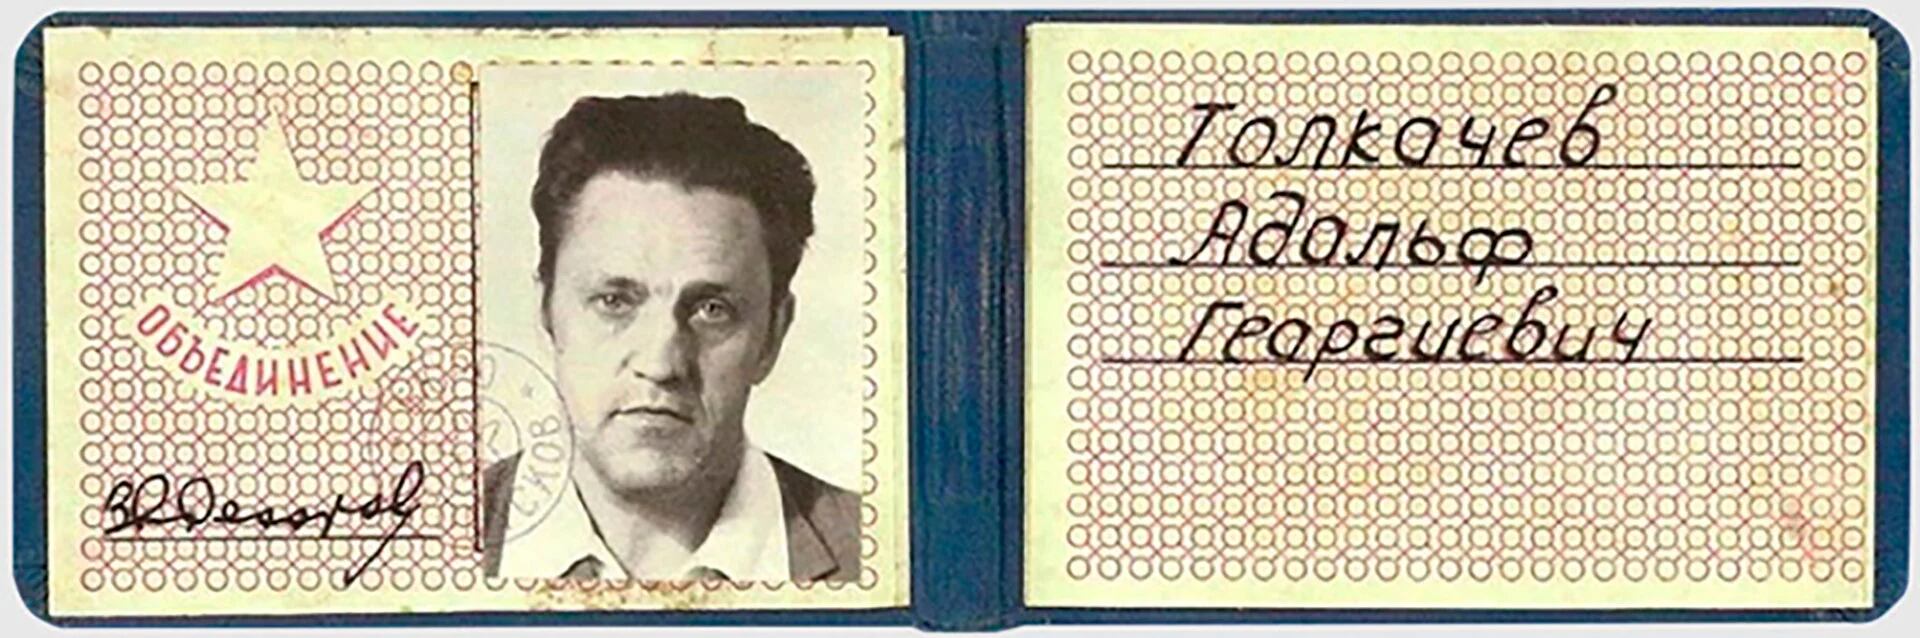 Un falso carnet de identificación creado por la CIA a nombre de Adolf Tolkachiev para intentar sacar documentos secretos del instituto soviético en el que trabajaba